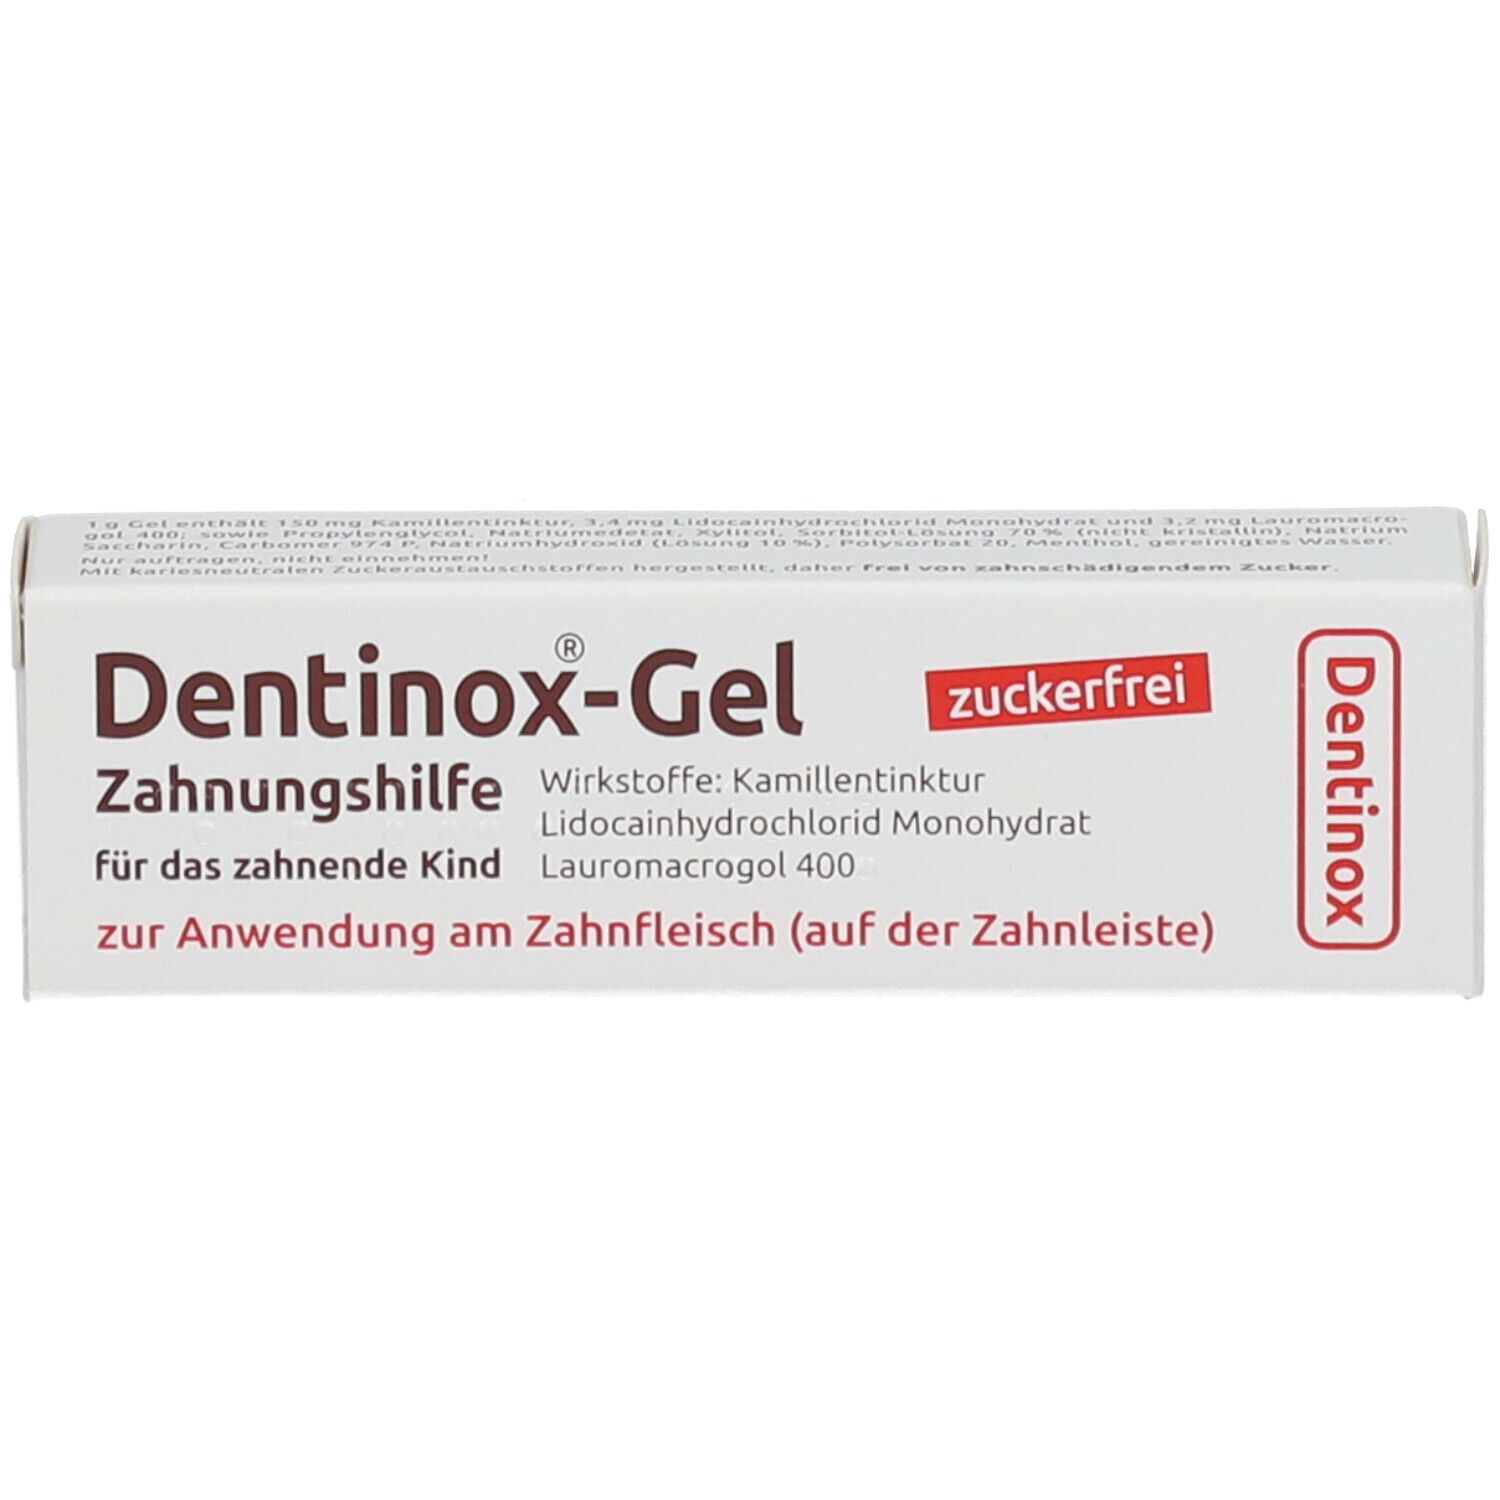 DENTINOX®-Gel Zahnungshilfe